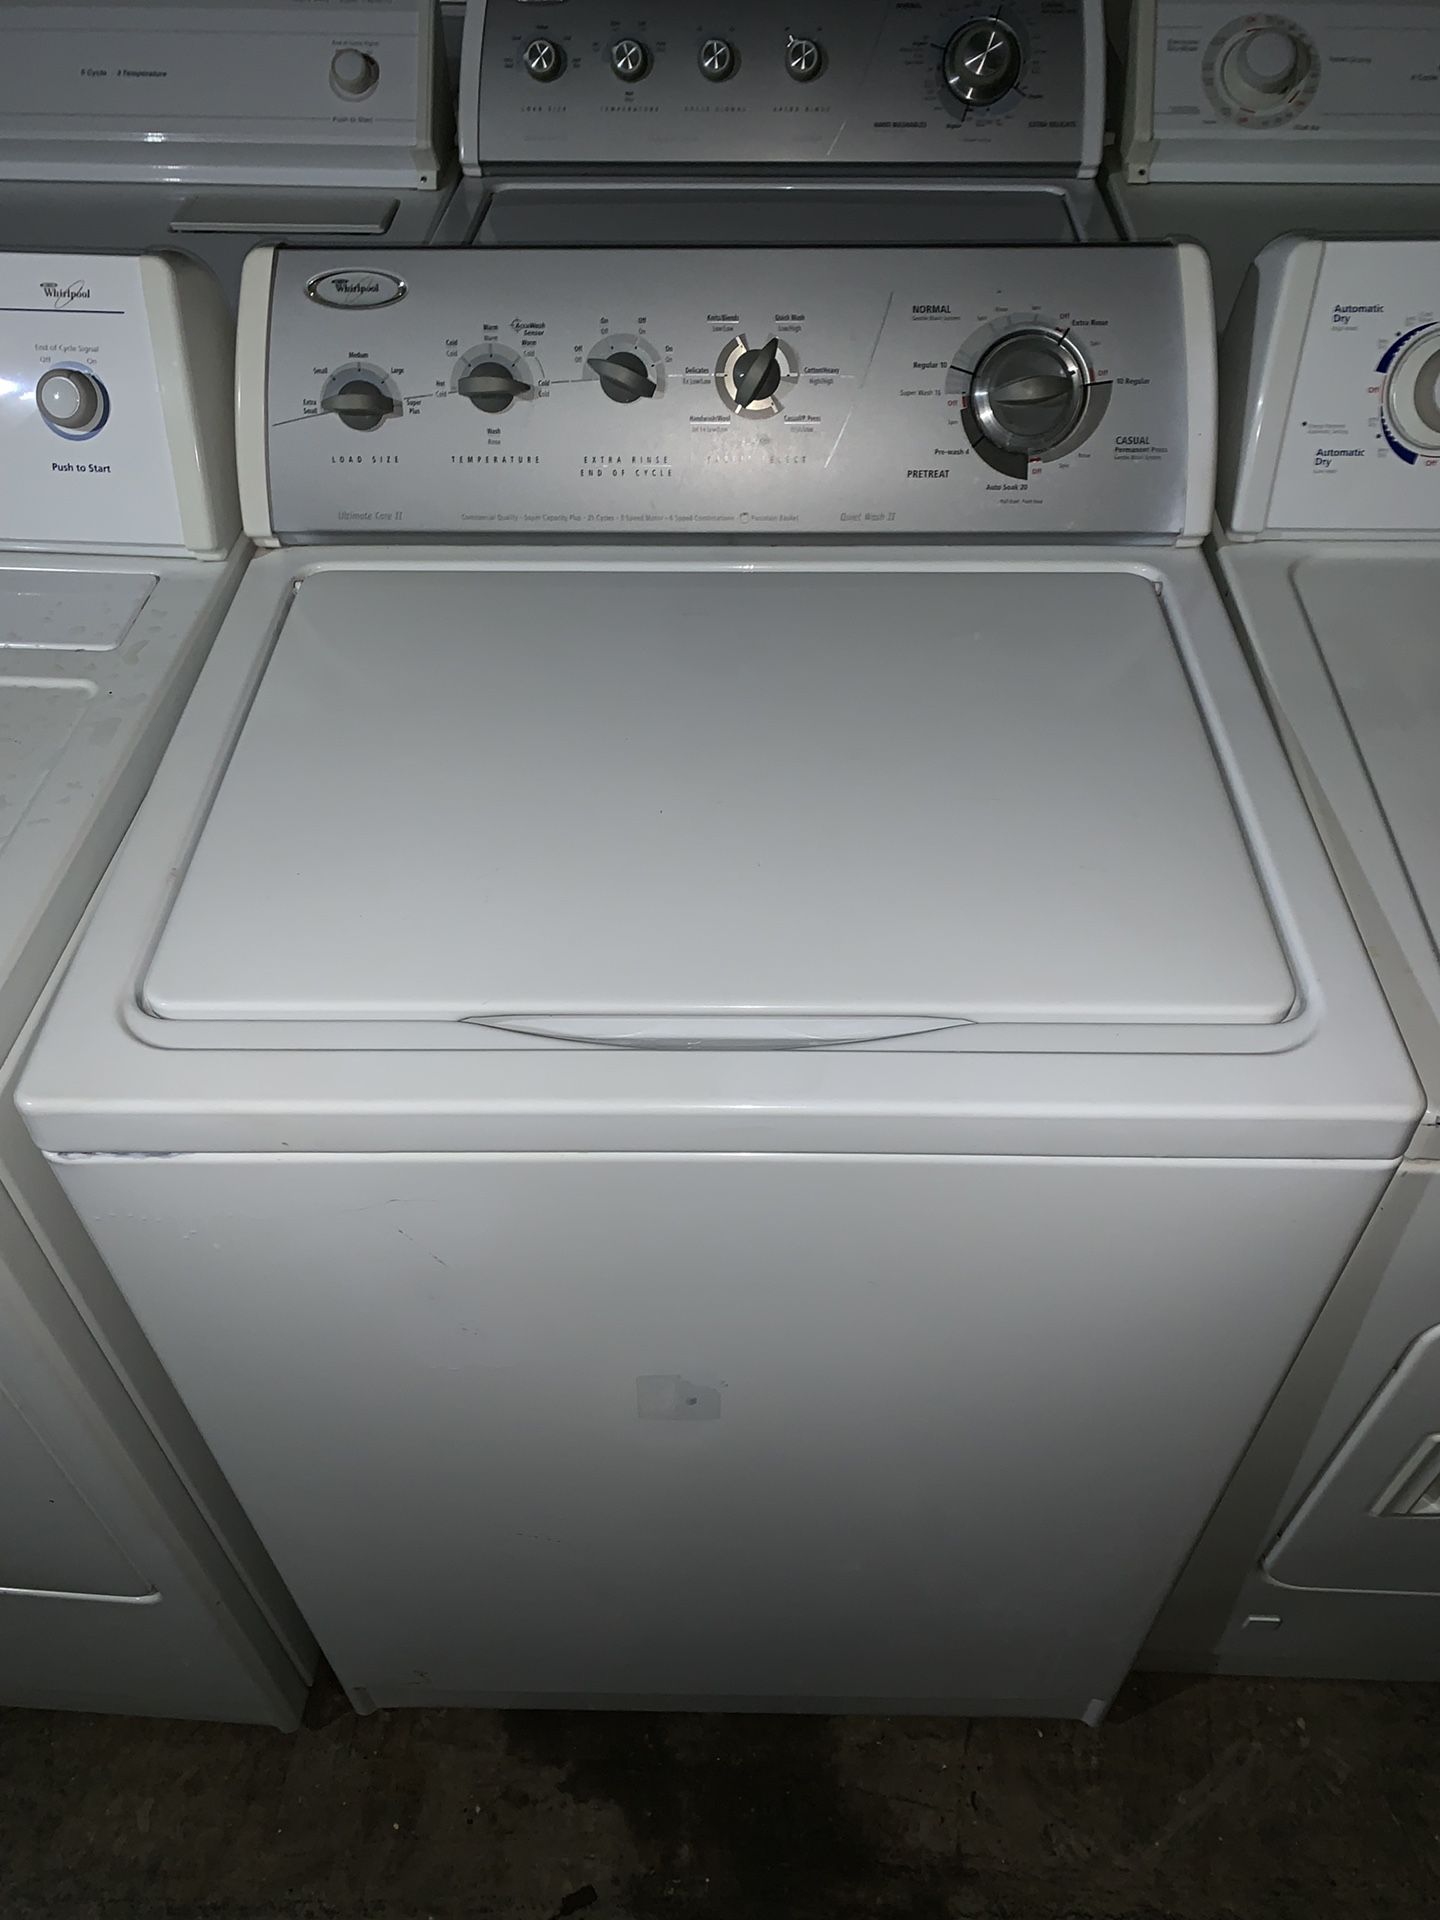 Whirlpool washer machine